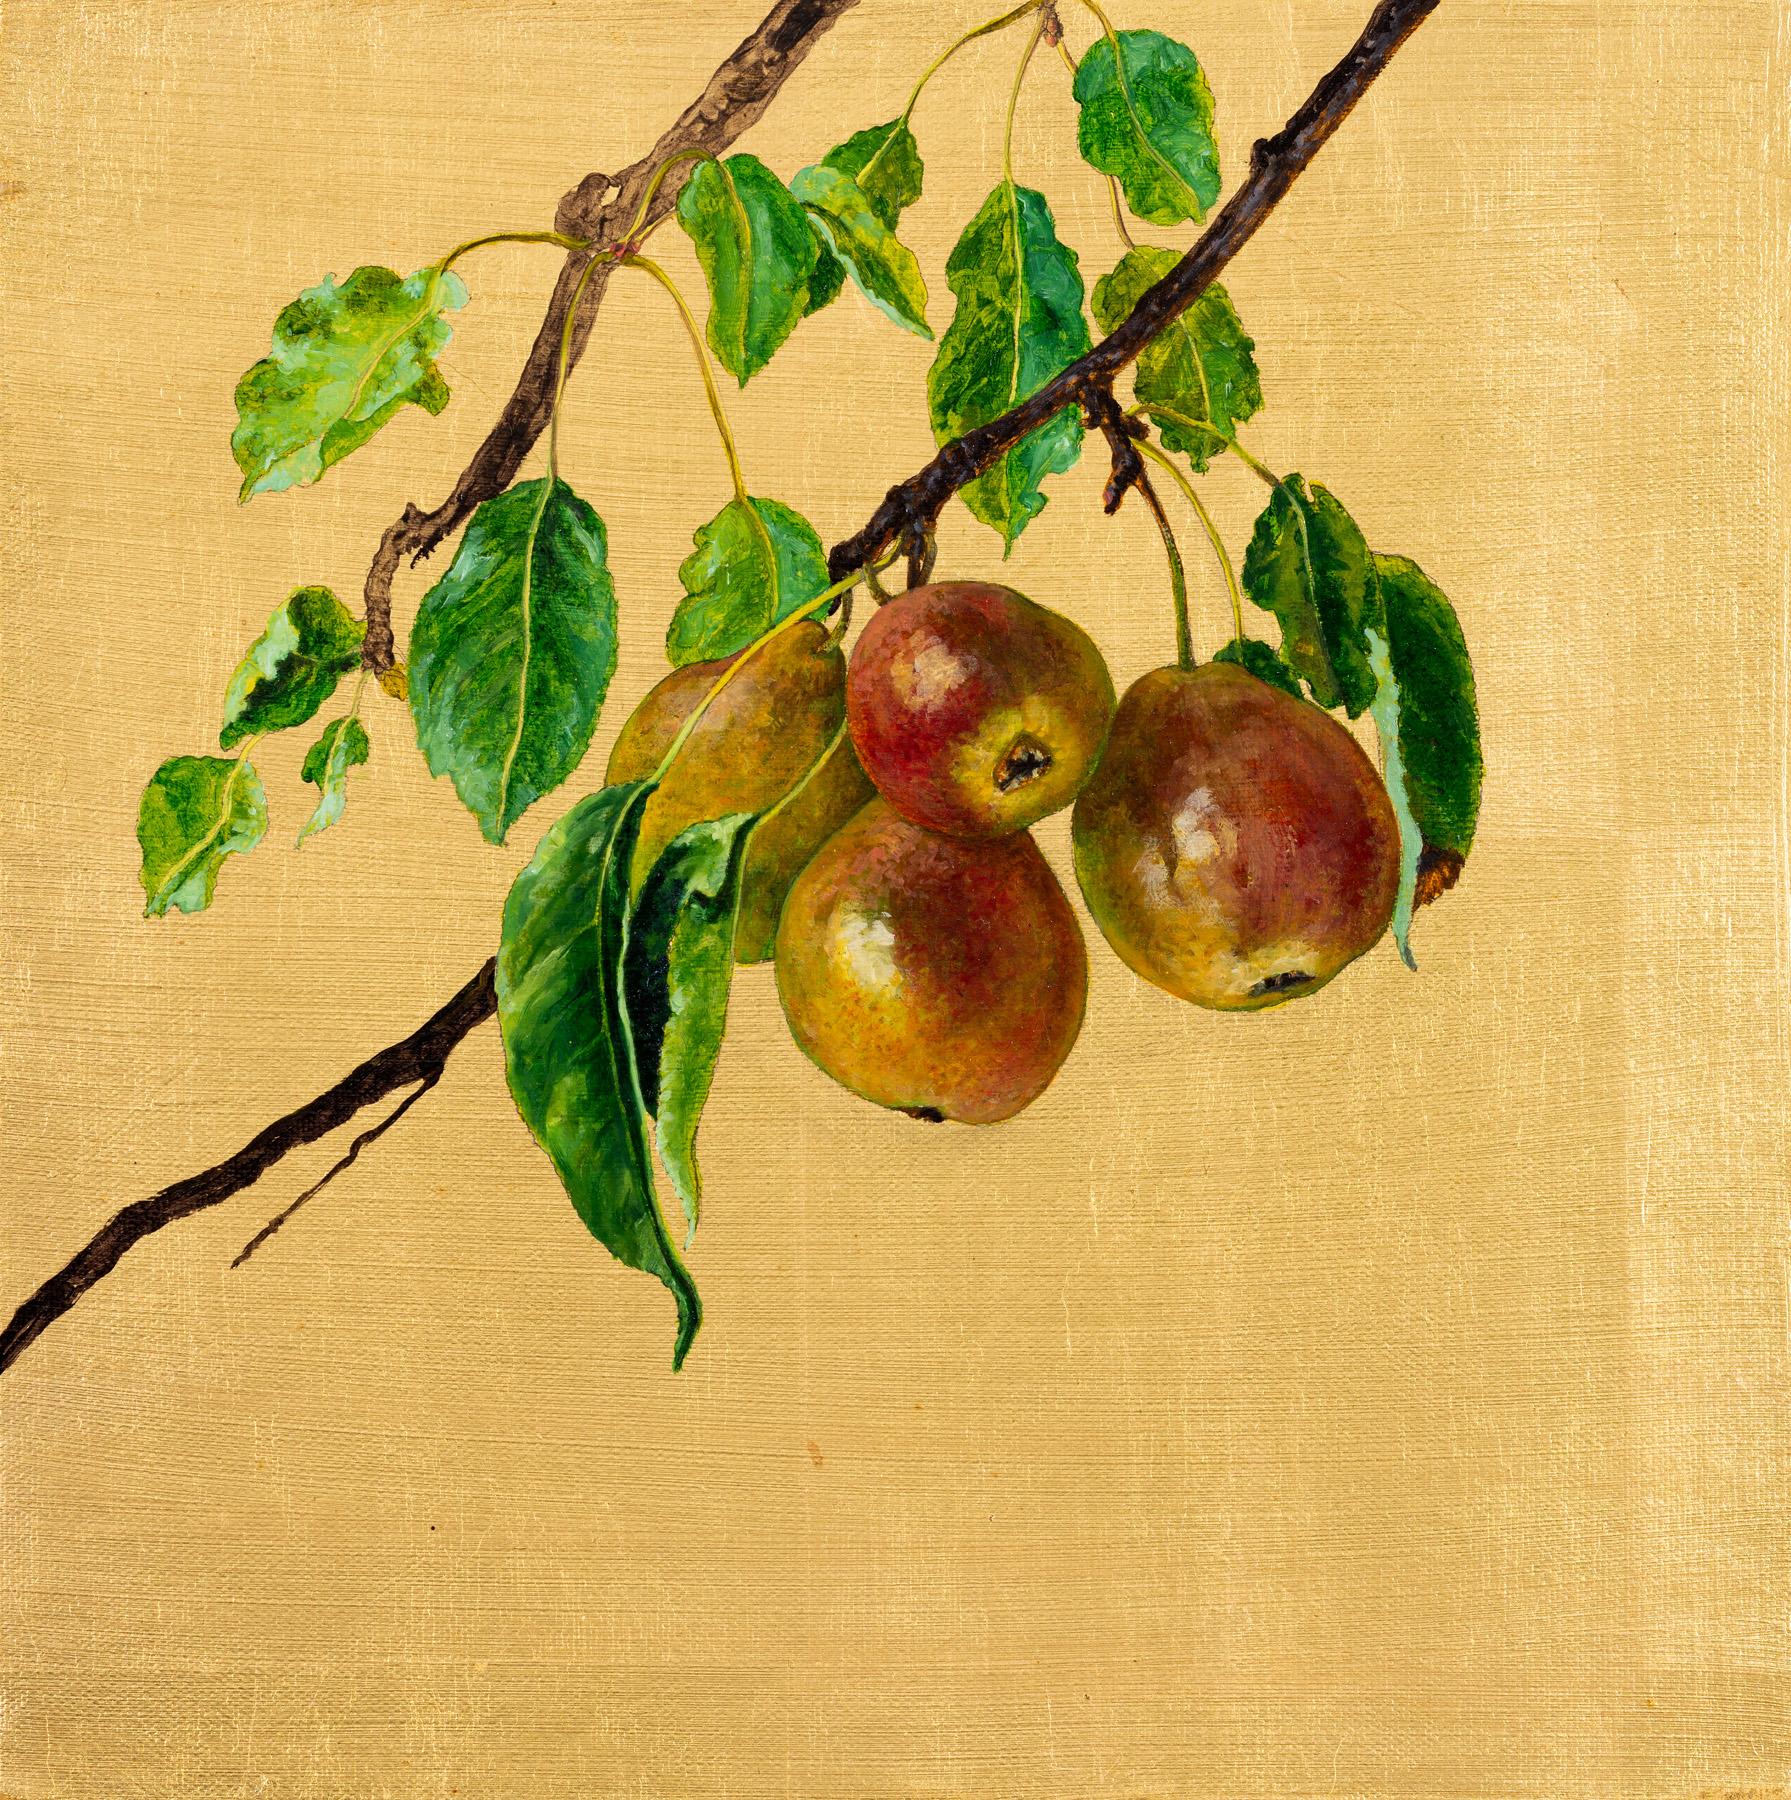 Birnenzweig mit reifen Früchten auf einem goldenen Hintergrund